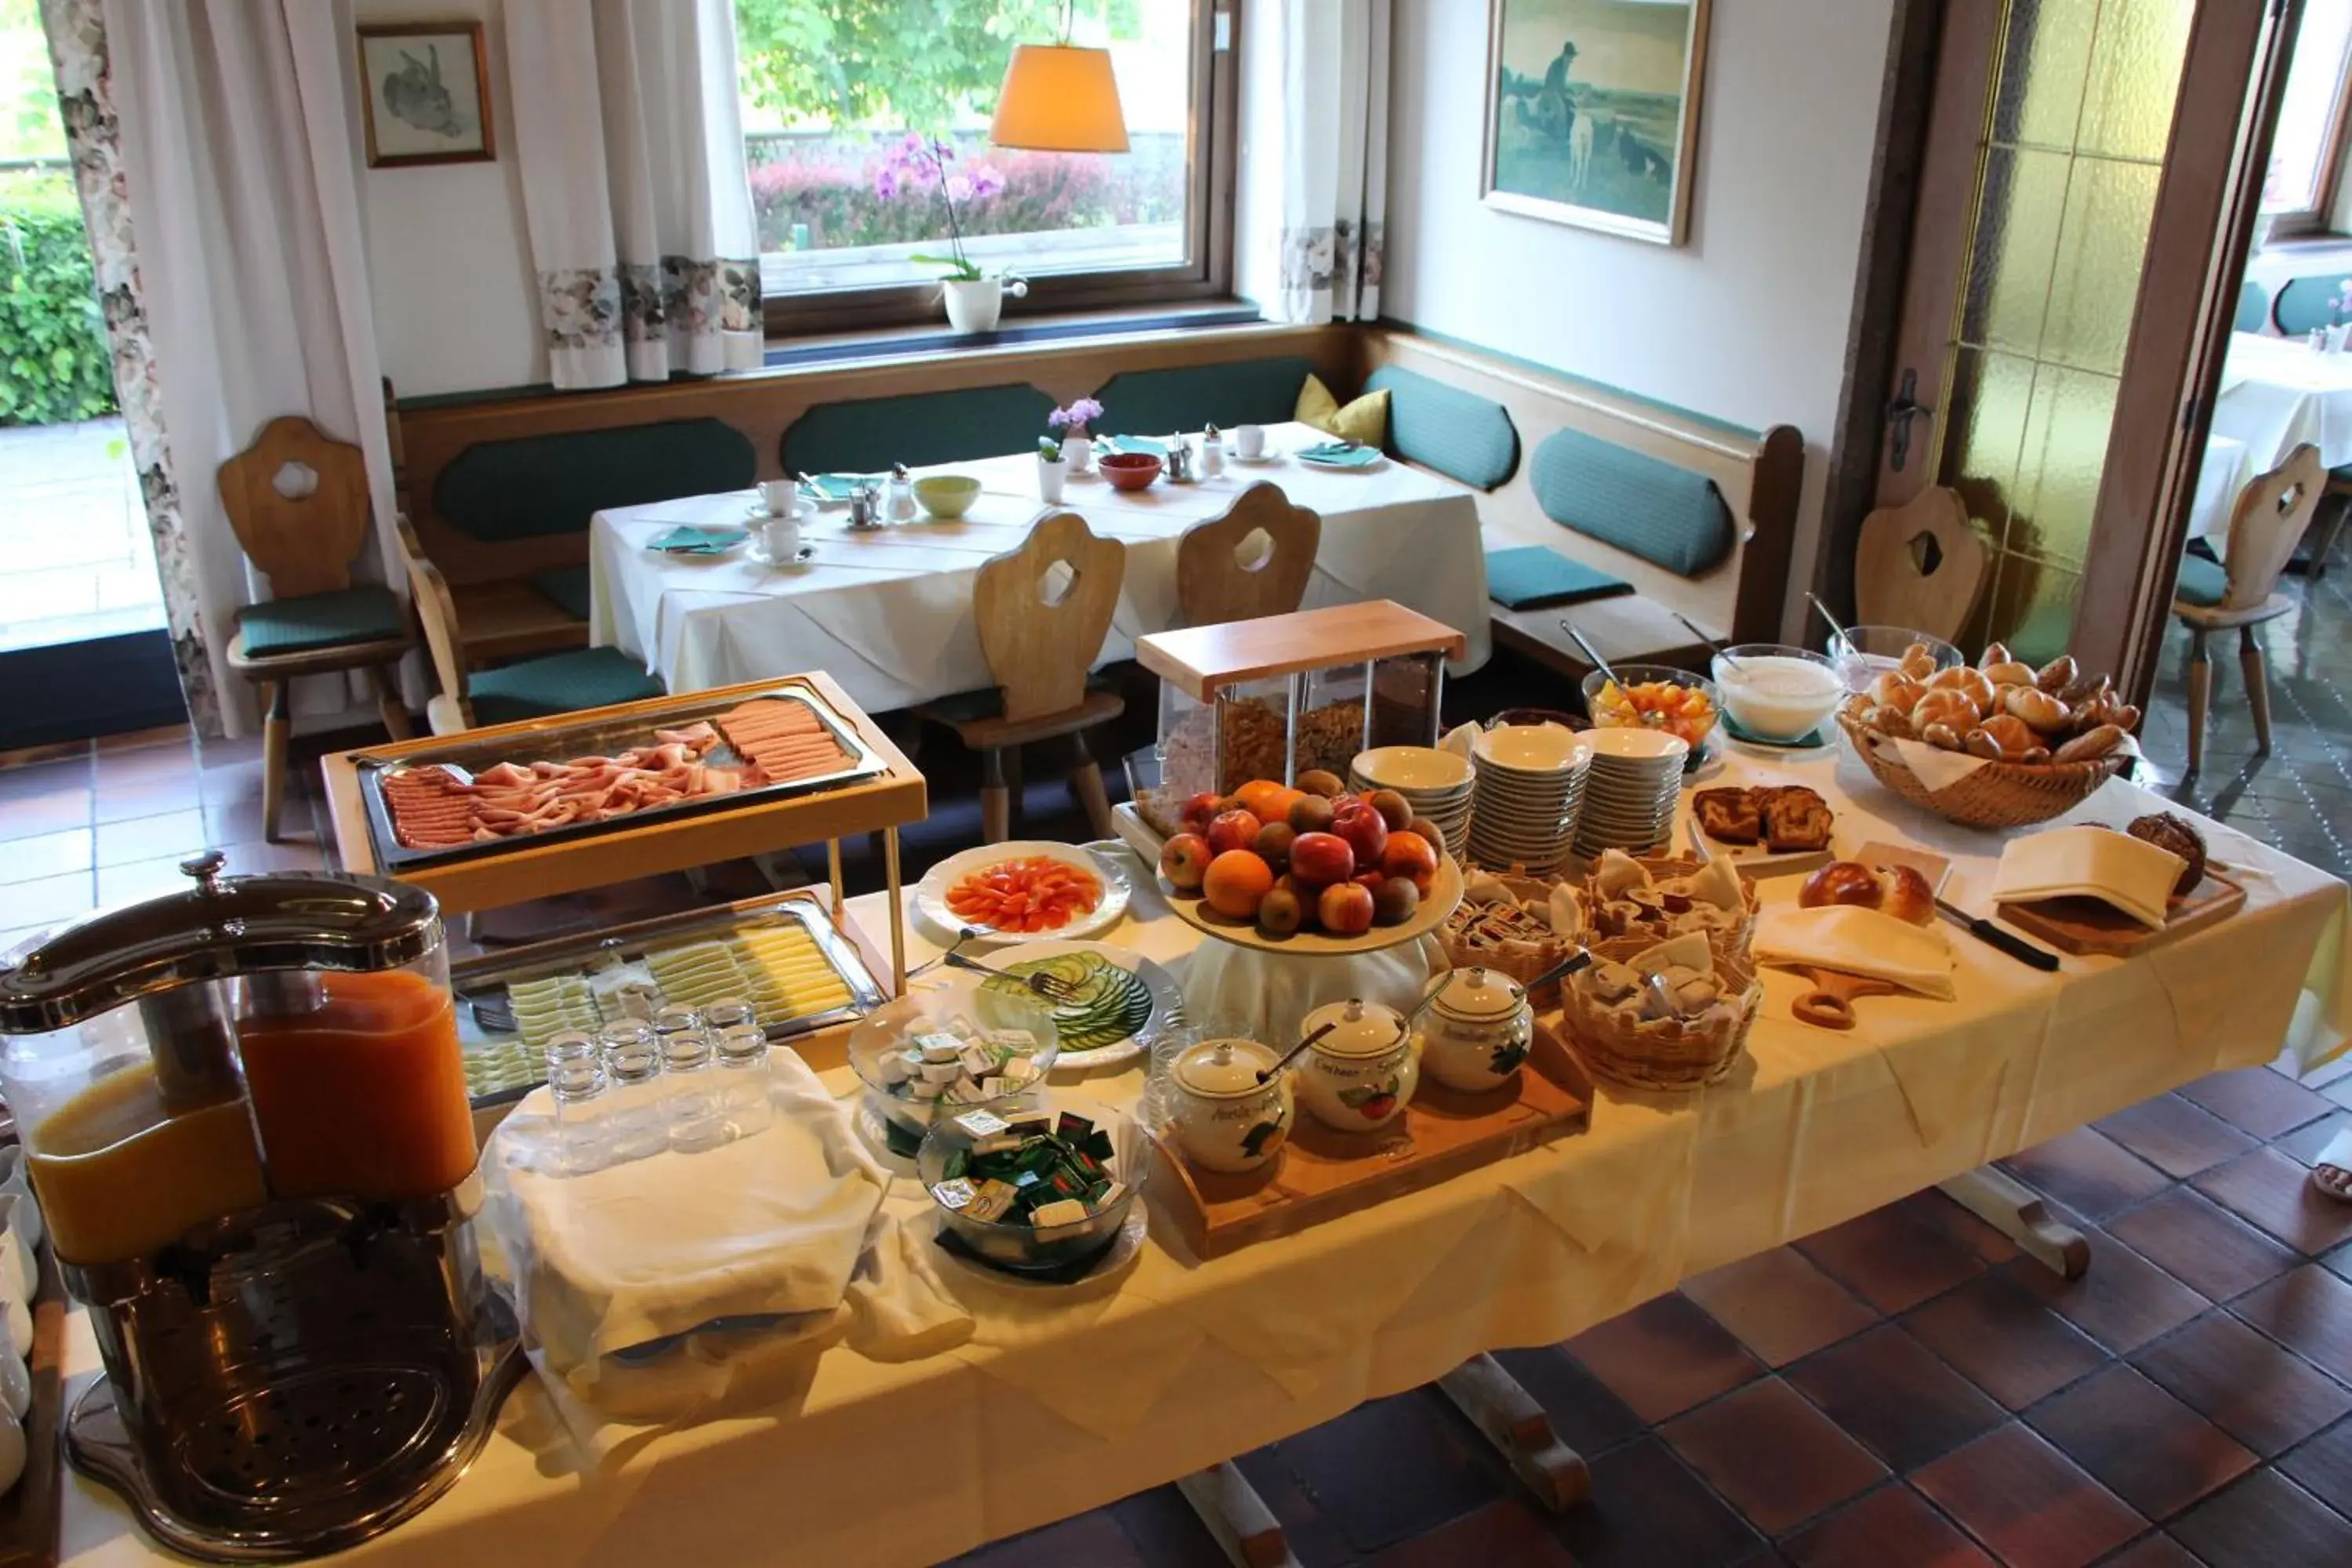 Buffet breakfast in Hotel Schöne Aussicht